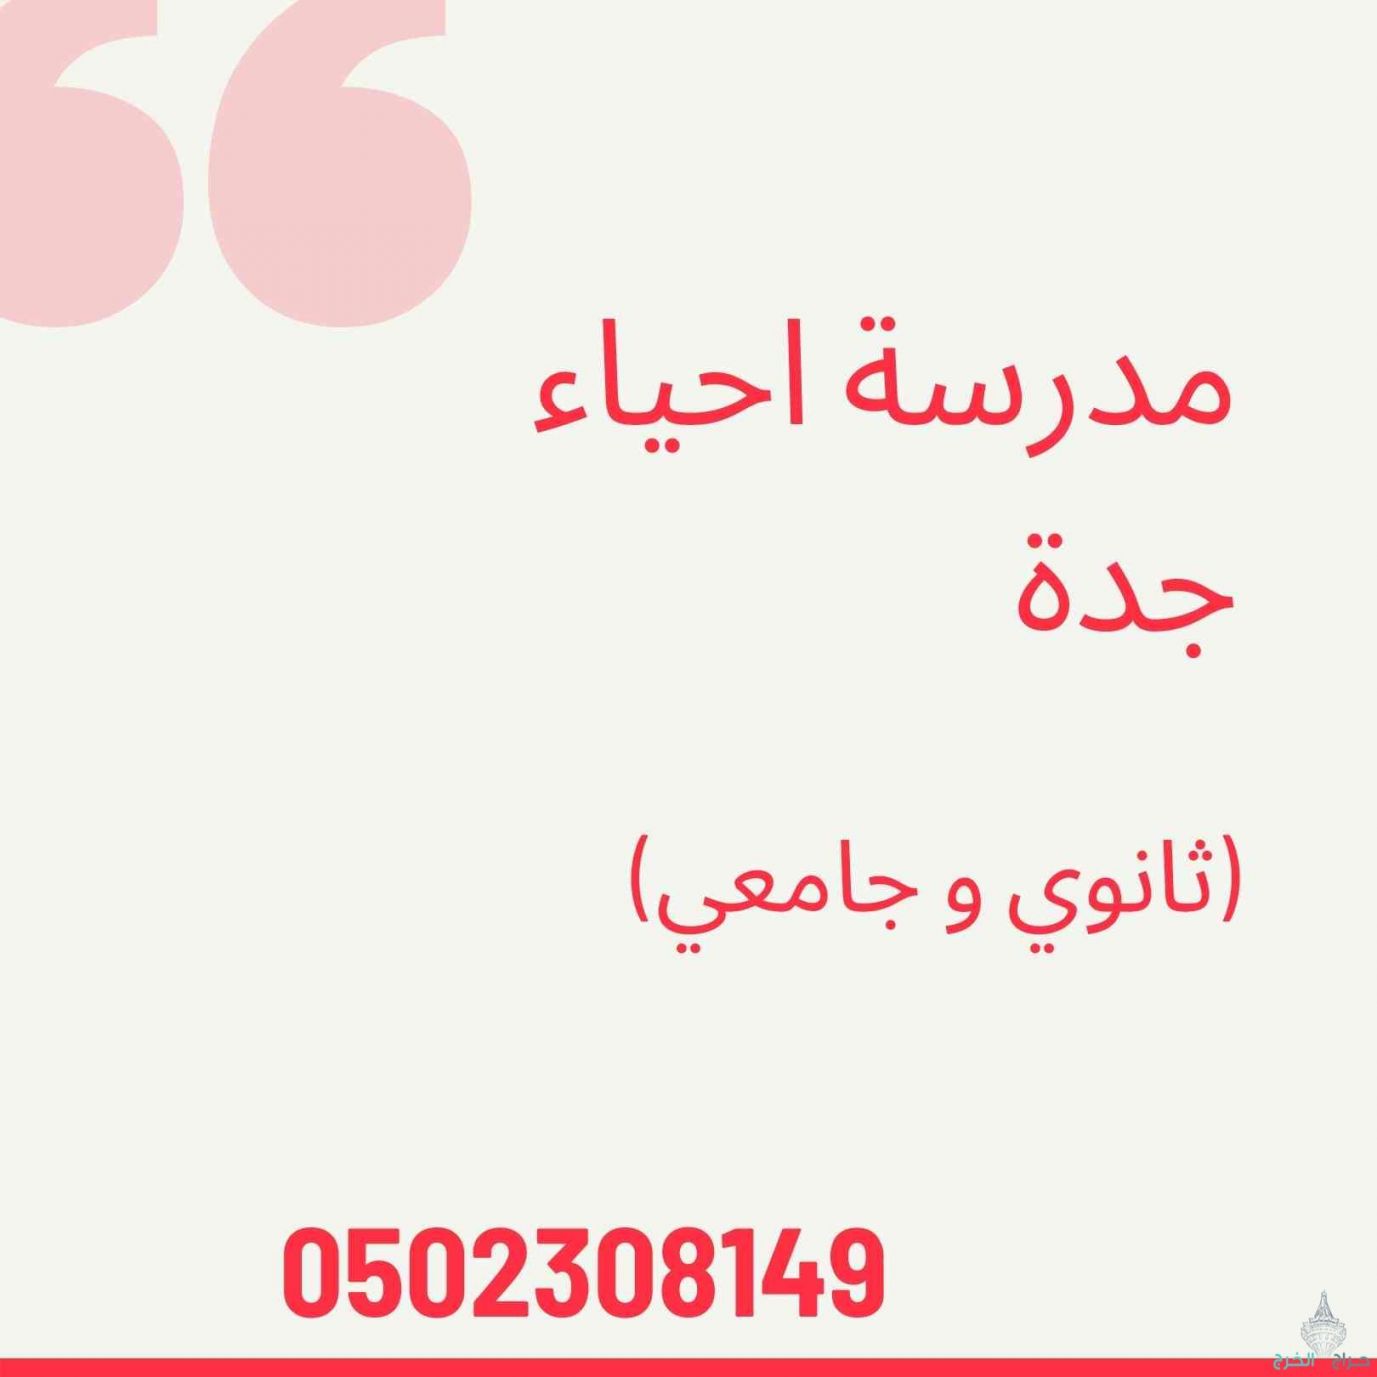 معلمة - معلم احياء جدة والرياض  0502308149